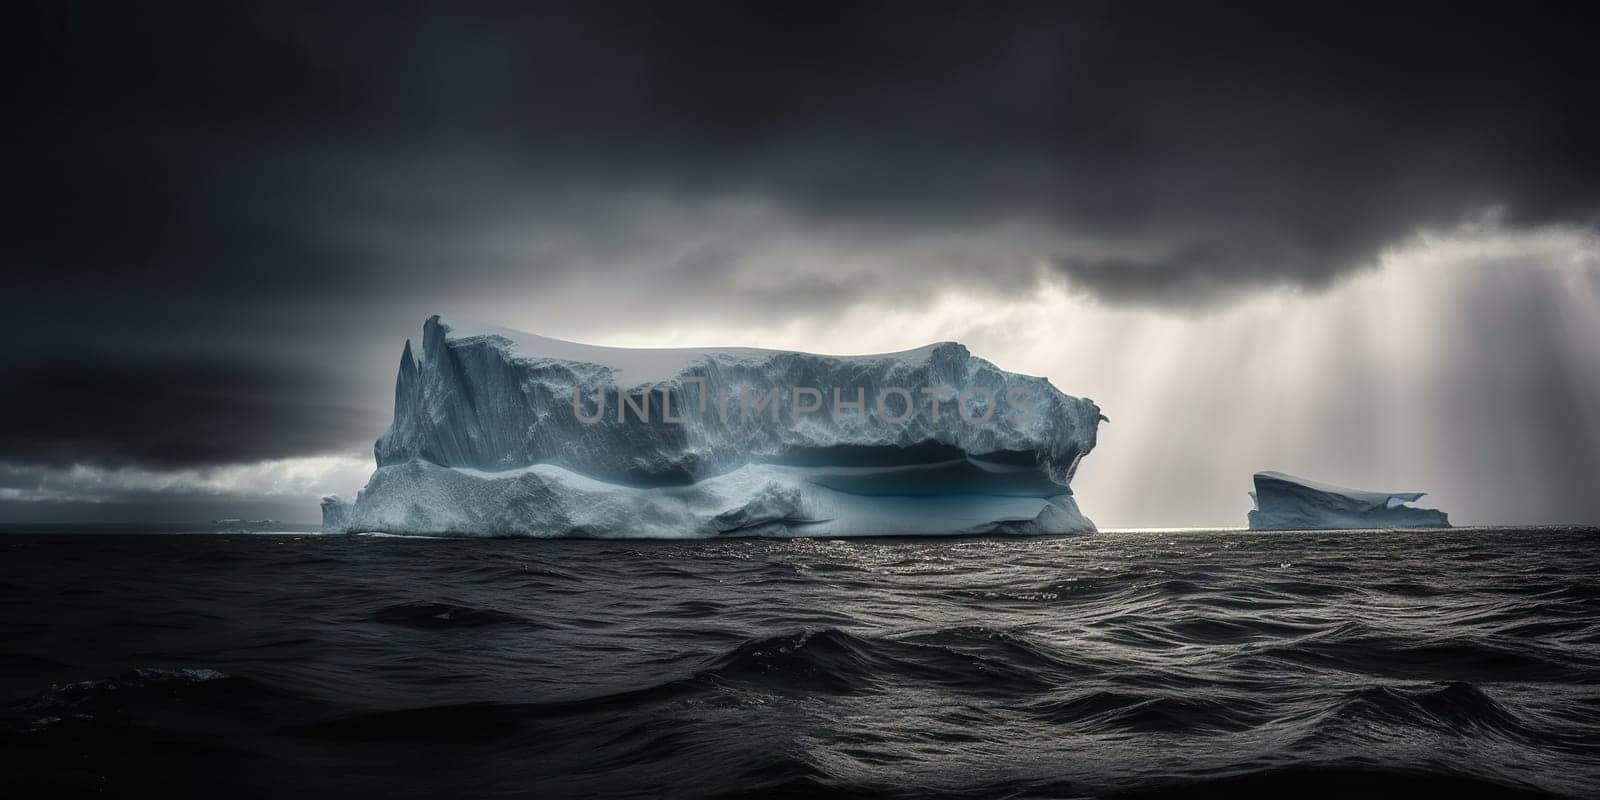 Iceberg Waving On Big Cold Waves Of North Ocean In Storm by GekaSkr